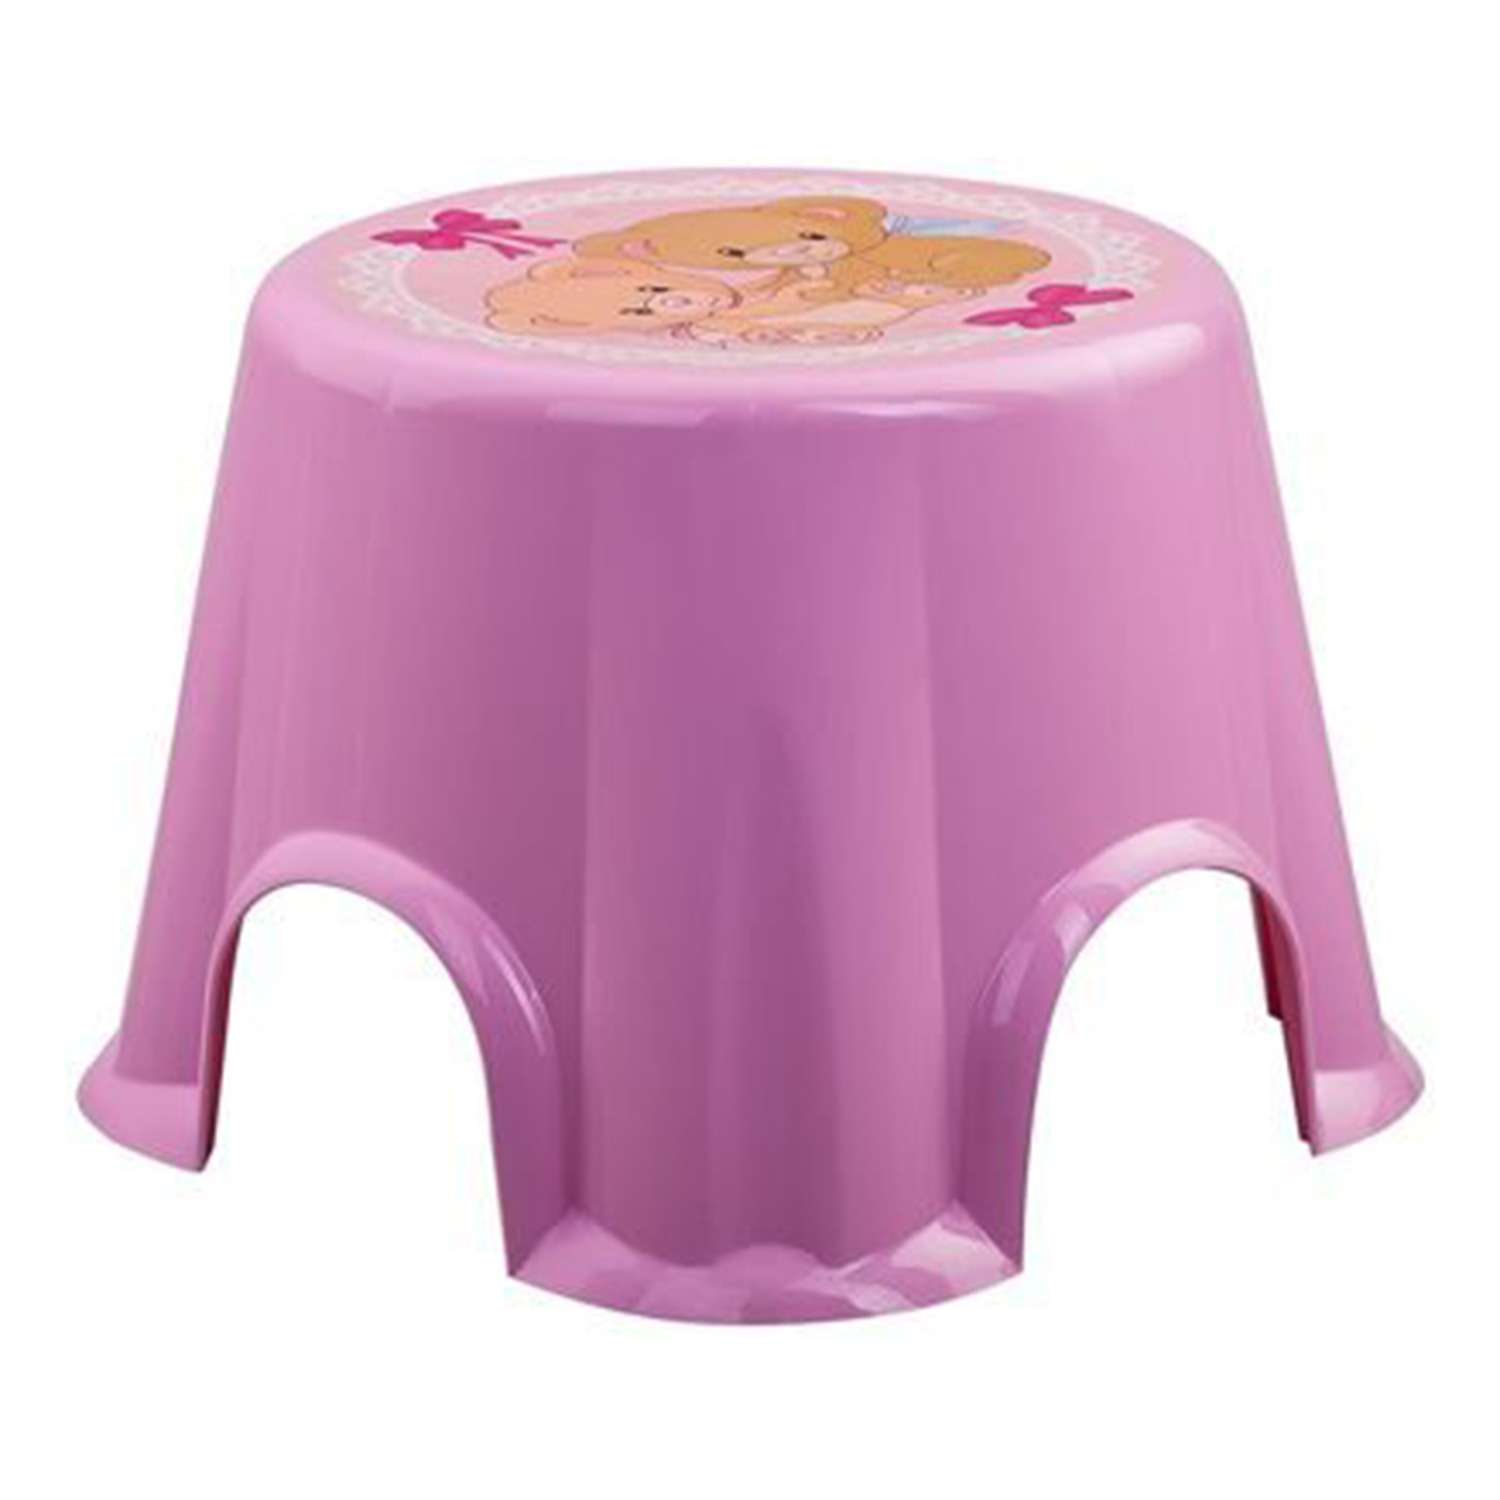 Табурет elfplast стул Пенёк детский с рисунком розовый - фото 3